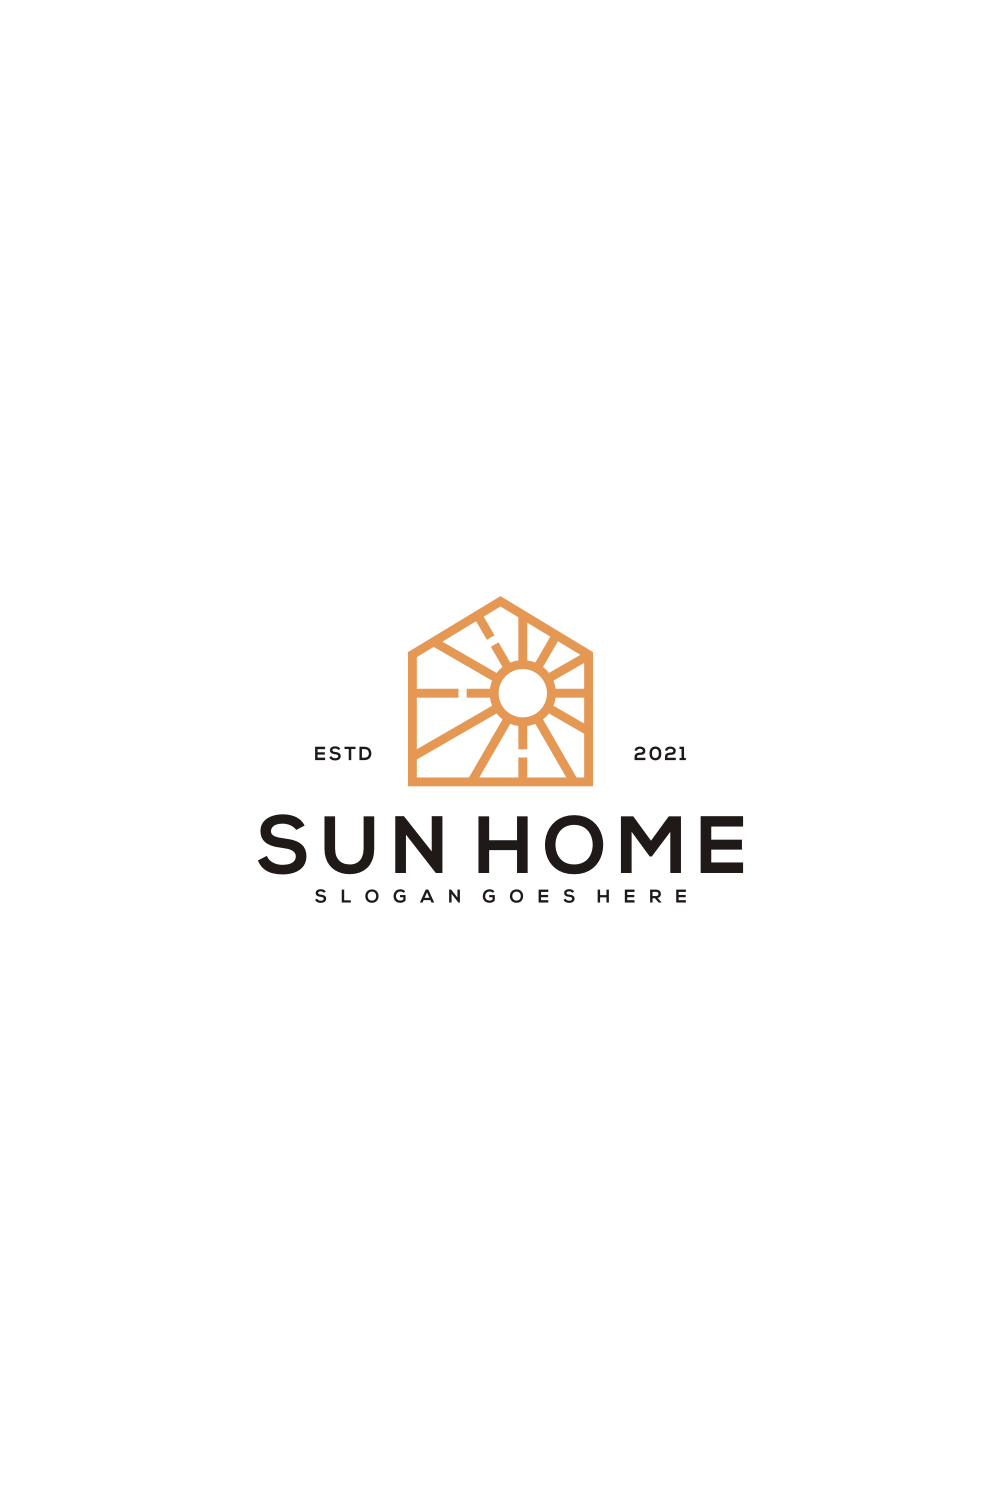 Sun Homes Logo Vector Design Line pinterest image.